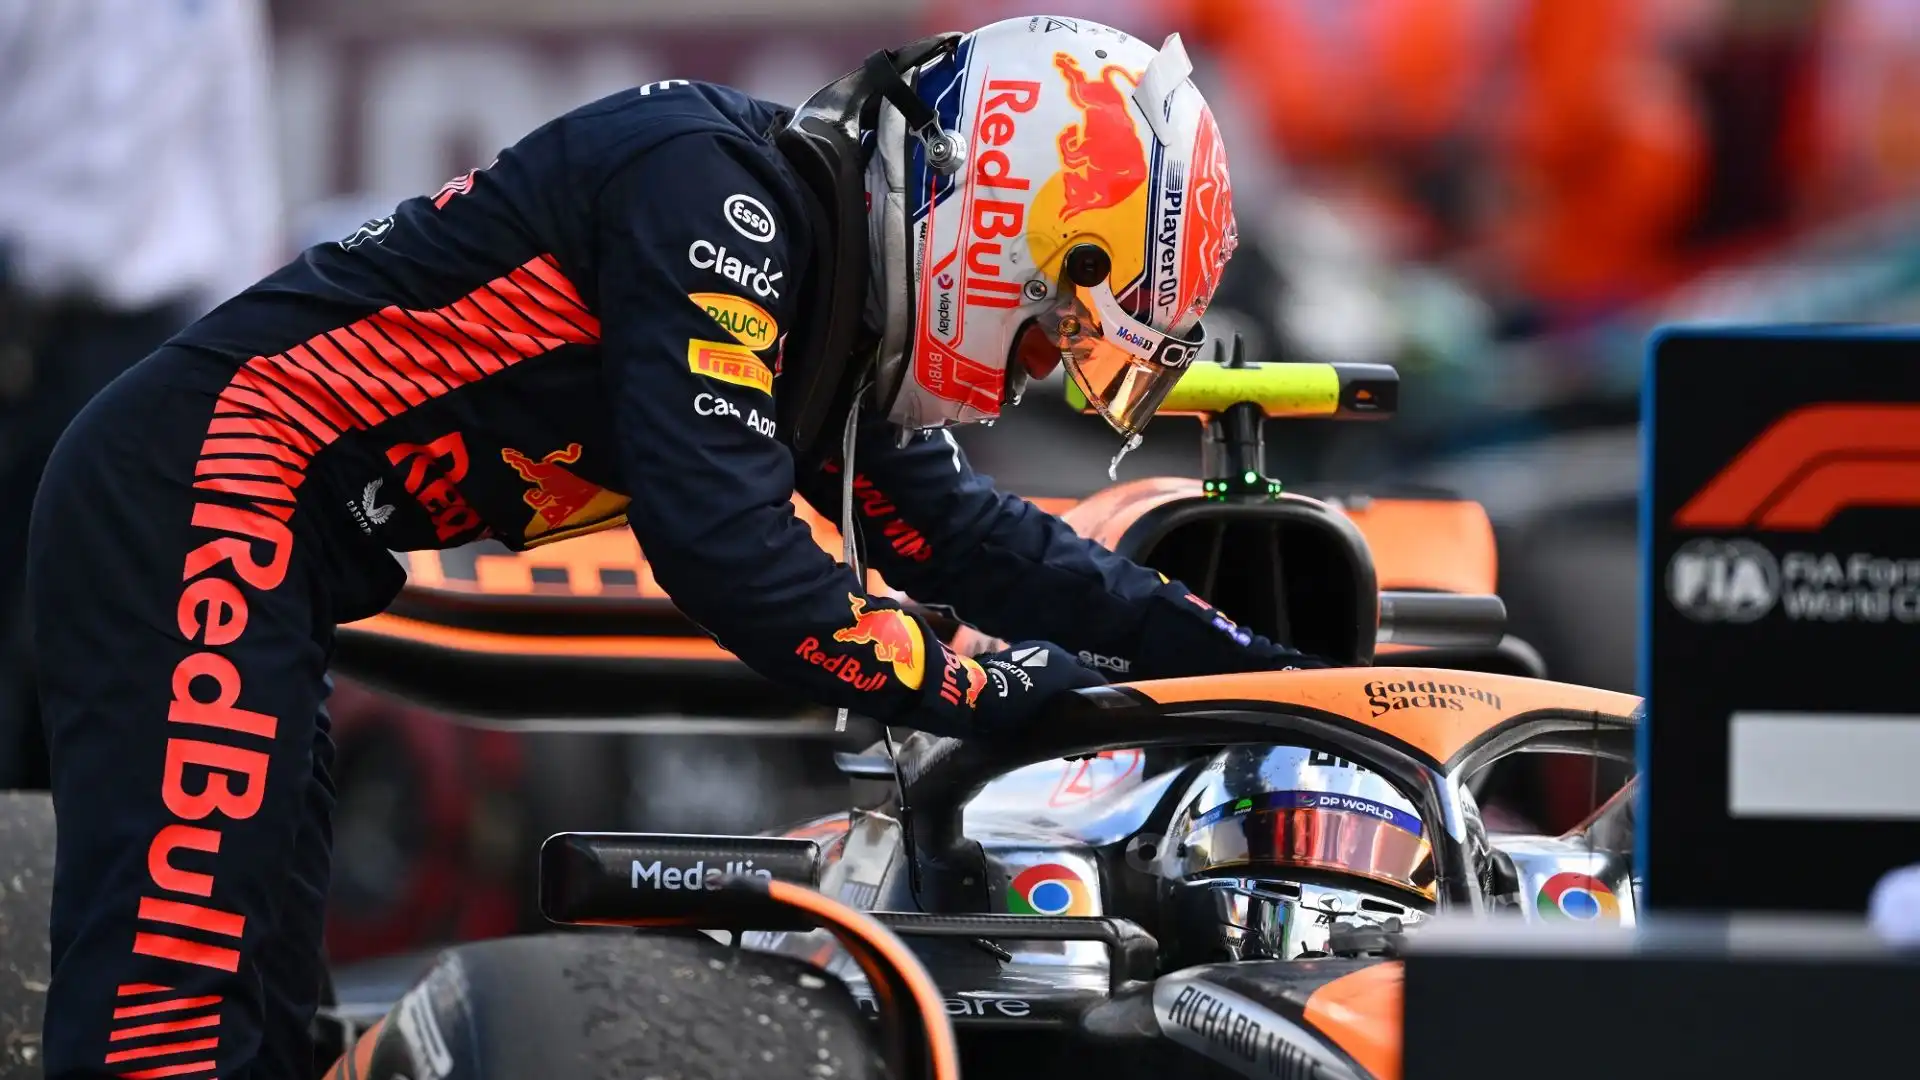 "La McLaren ha fatto passi da gigante durante l'anno", ha detto Verstappen